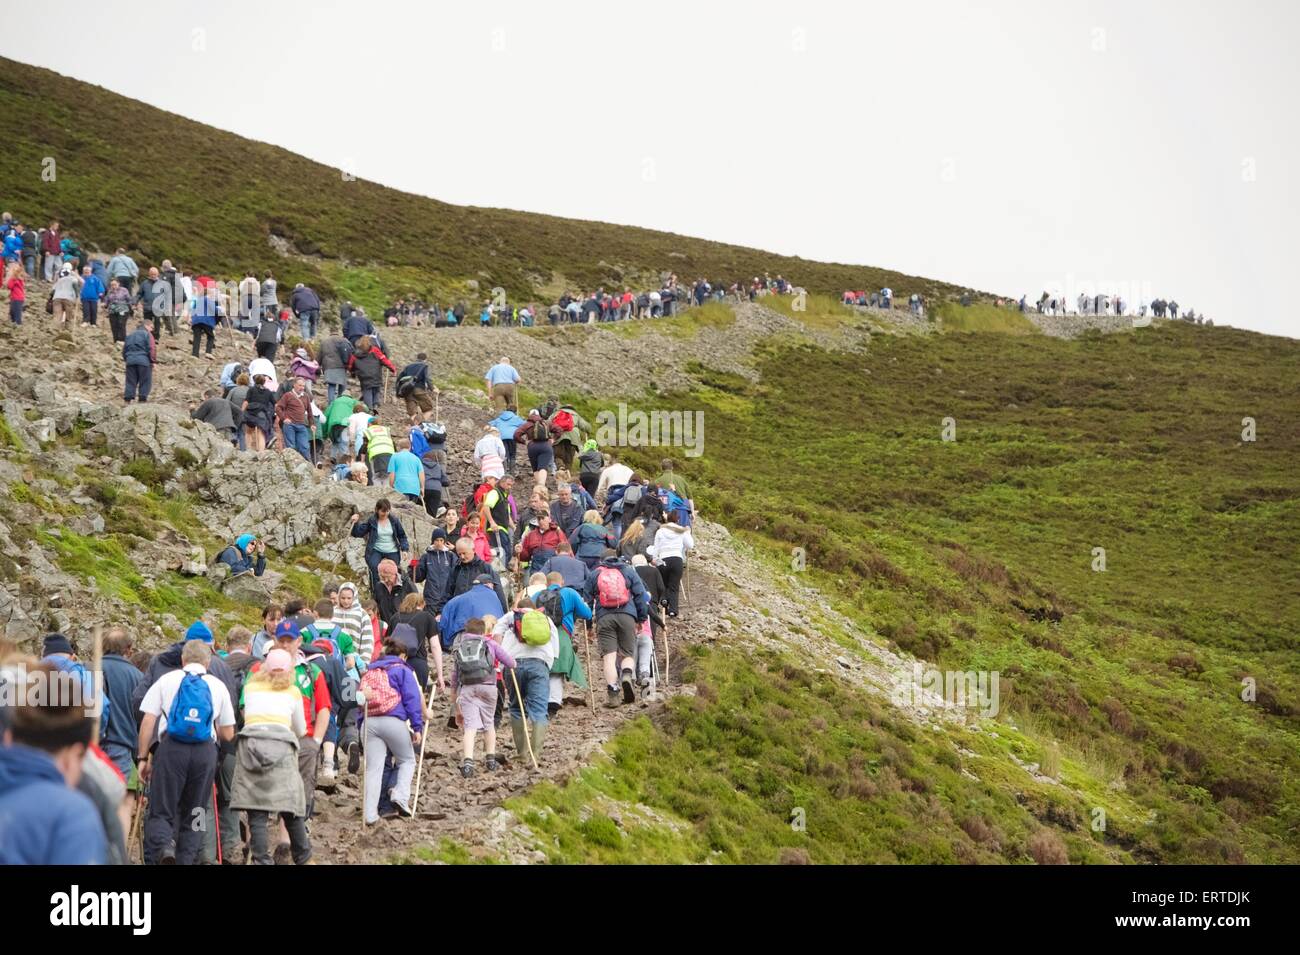 Les gens Croagh Patrick escalade la montagne sacrée dans le comté de Mayo dans l'ouest de l'Irlande. Des milliers de personnes, dont beaucoup dans leur fe nu Banque D'Images